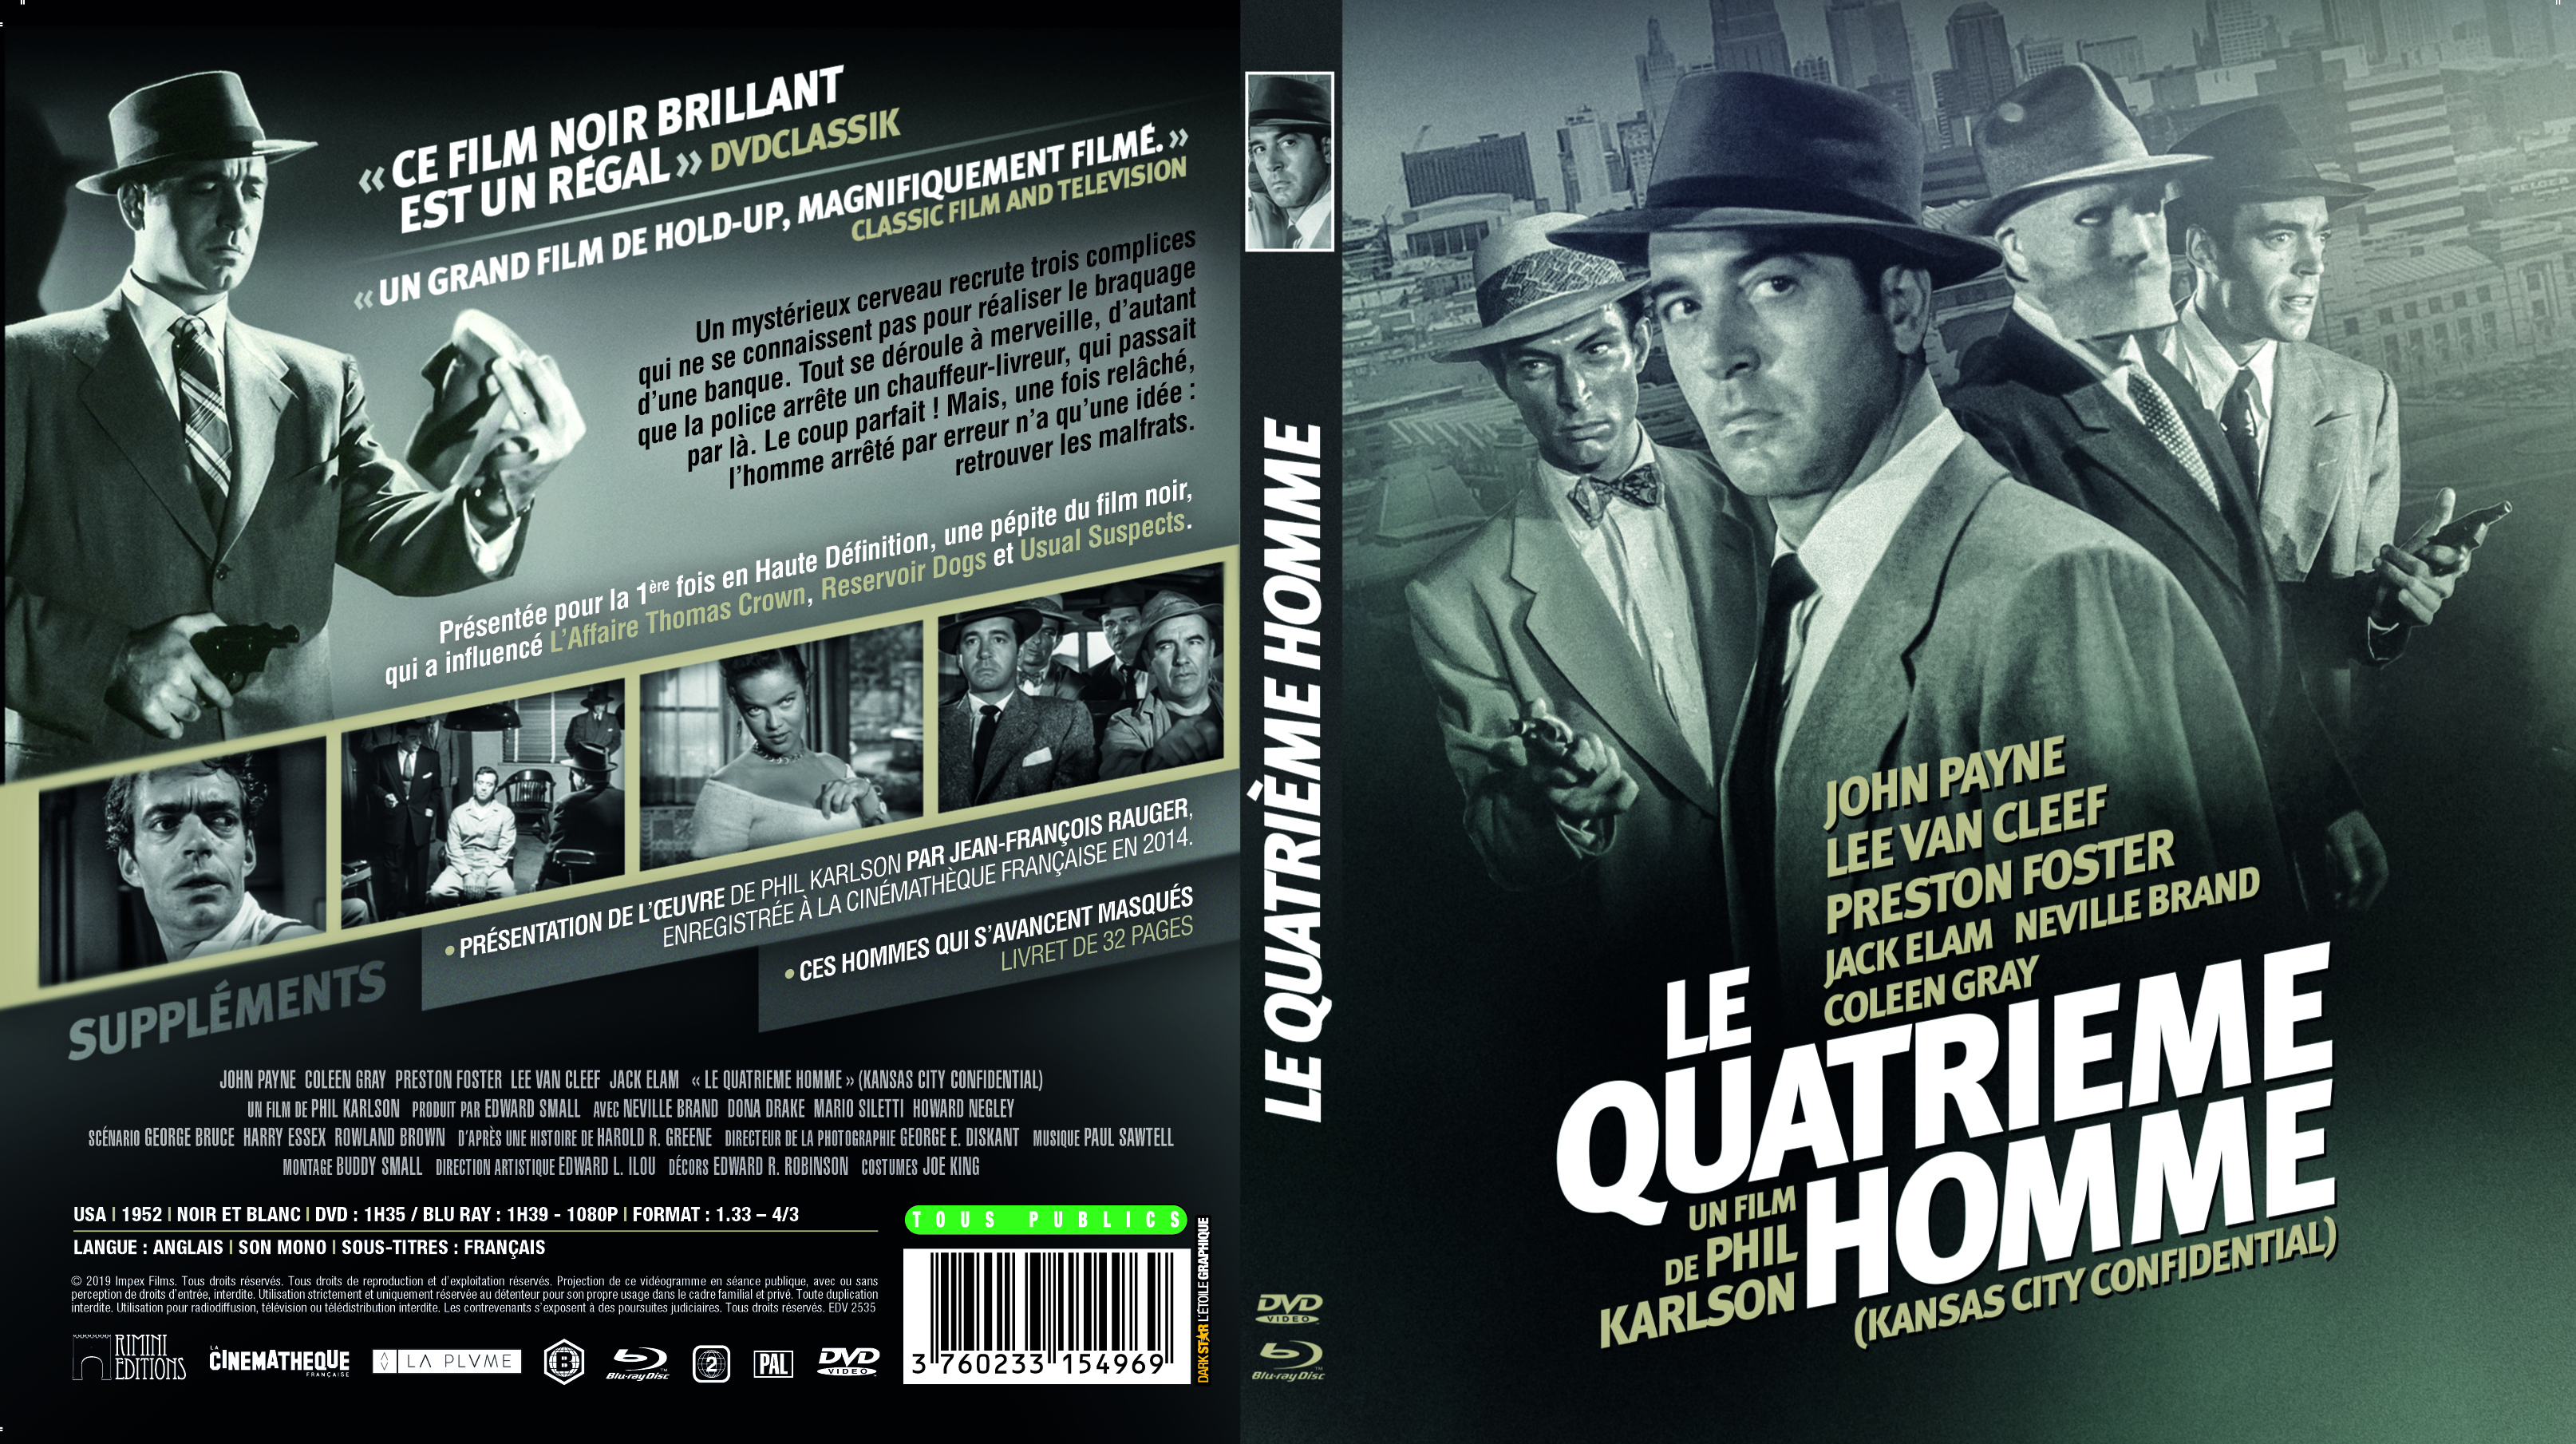 Jaquette DVD Le Quatrime homme (BLU-RAY)